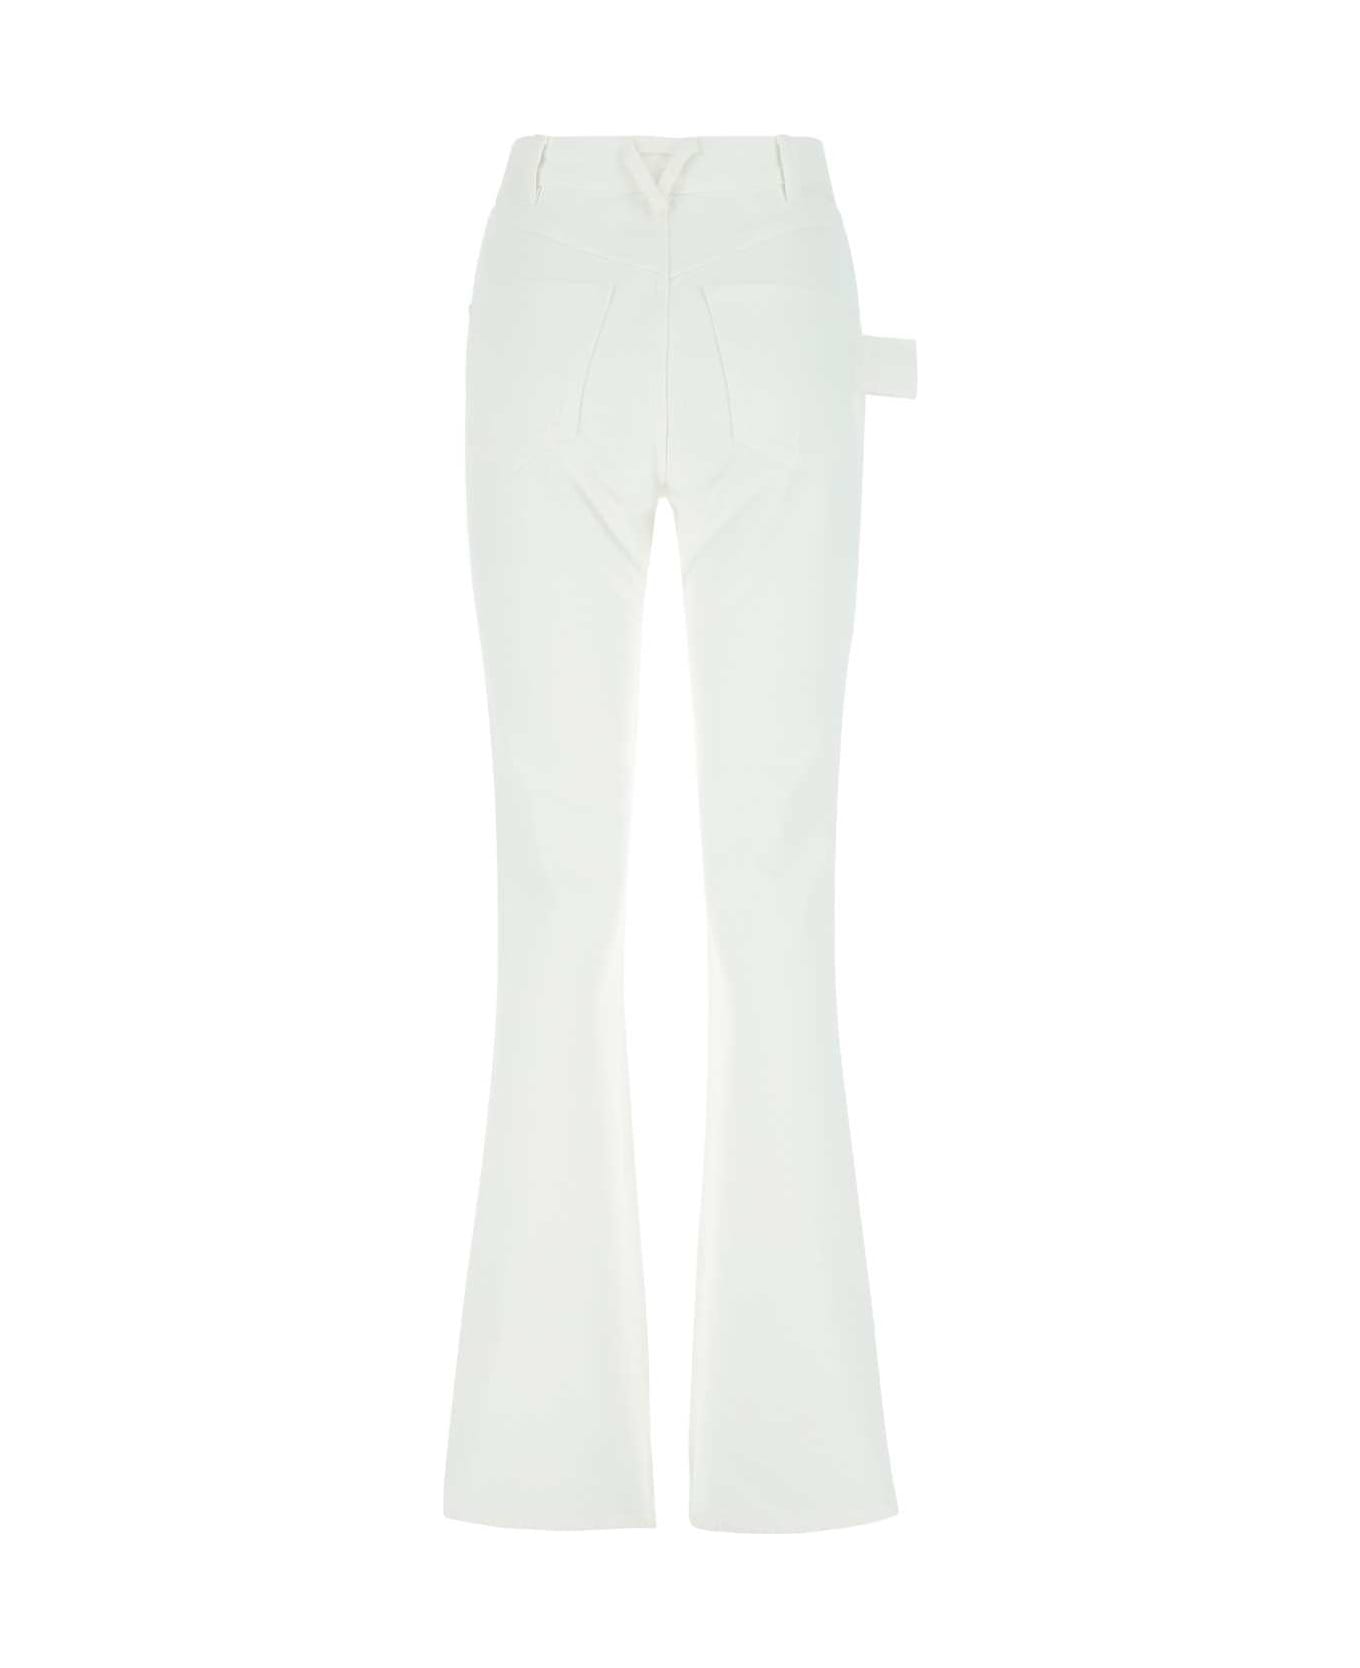 Bottega Veneta White Denim Jeans - 9000